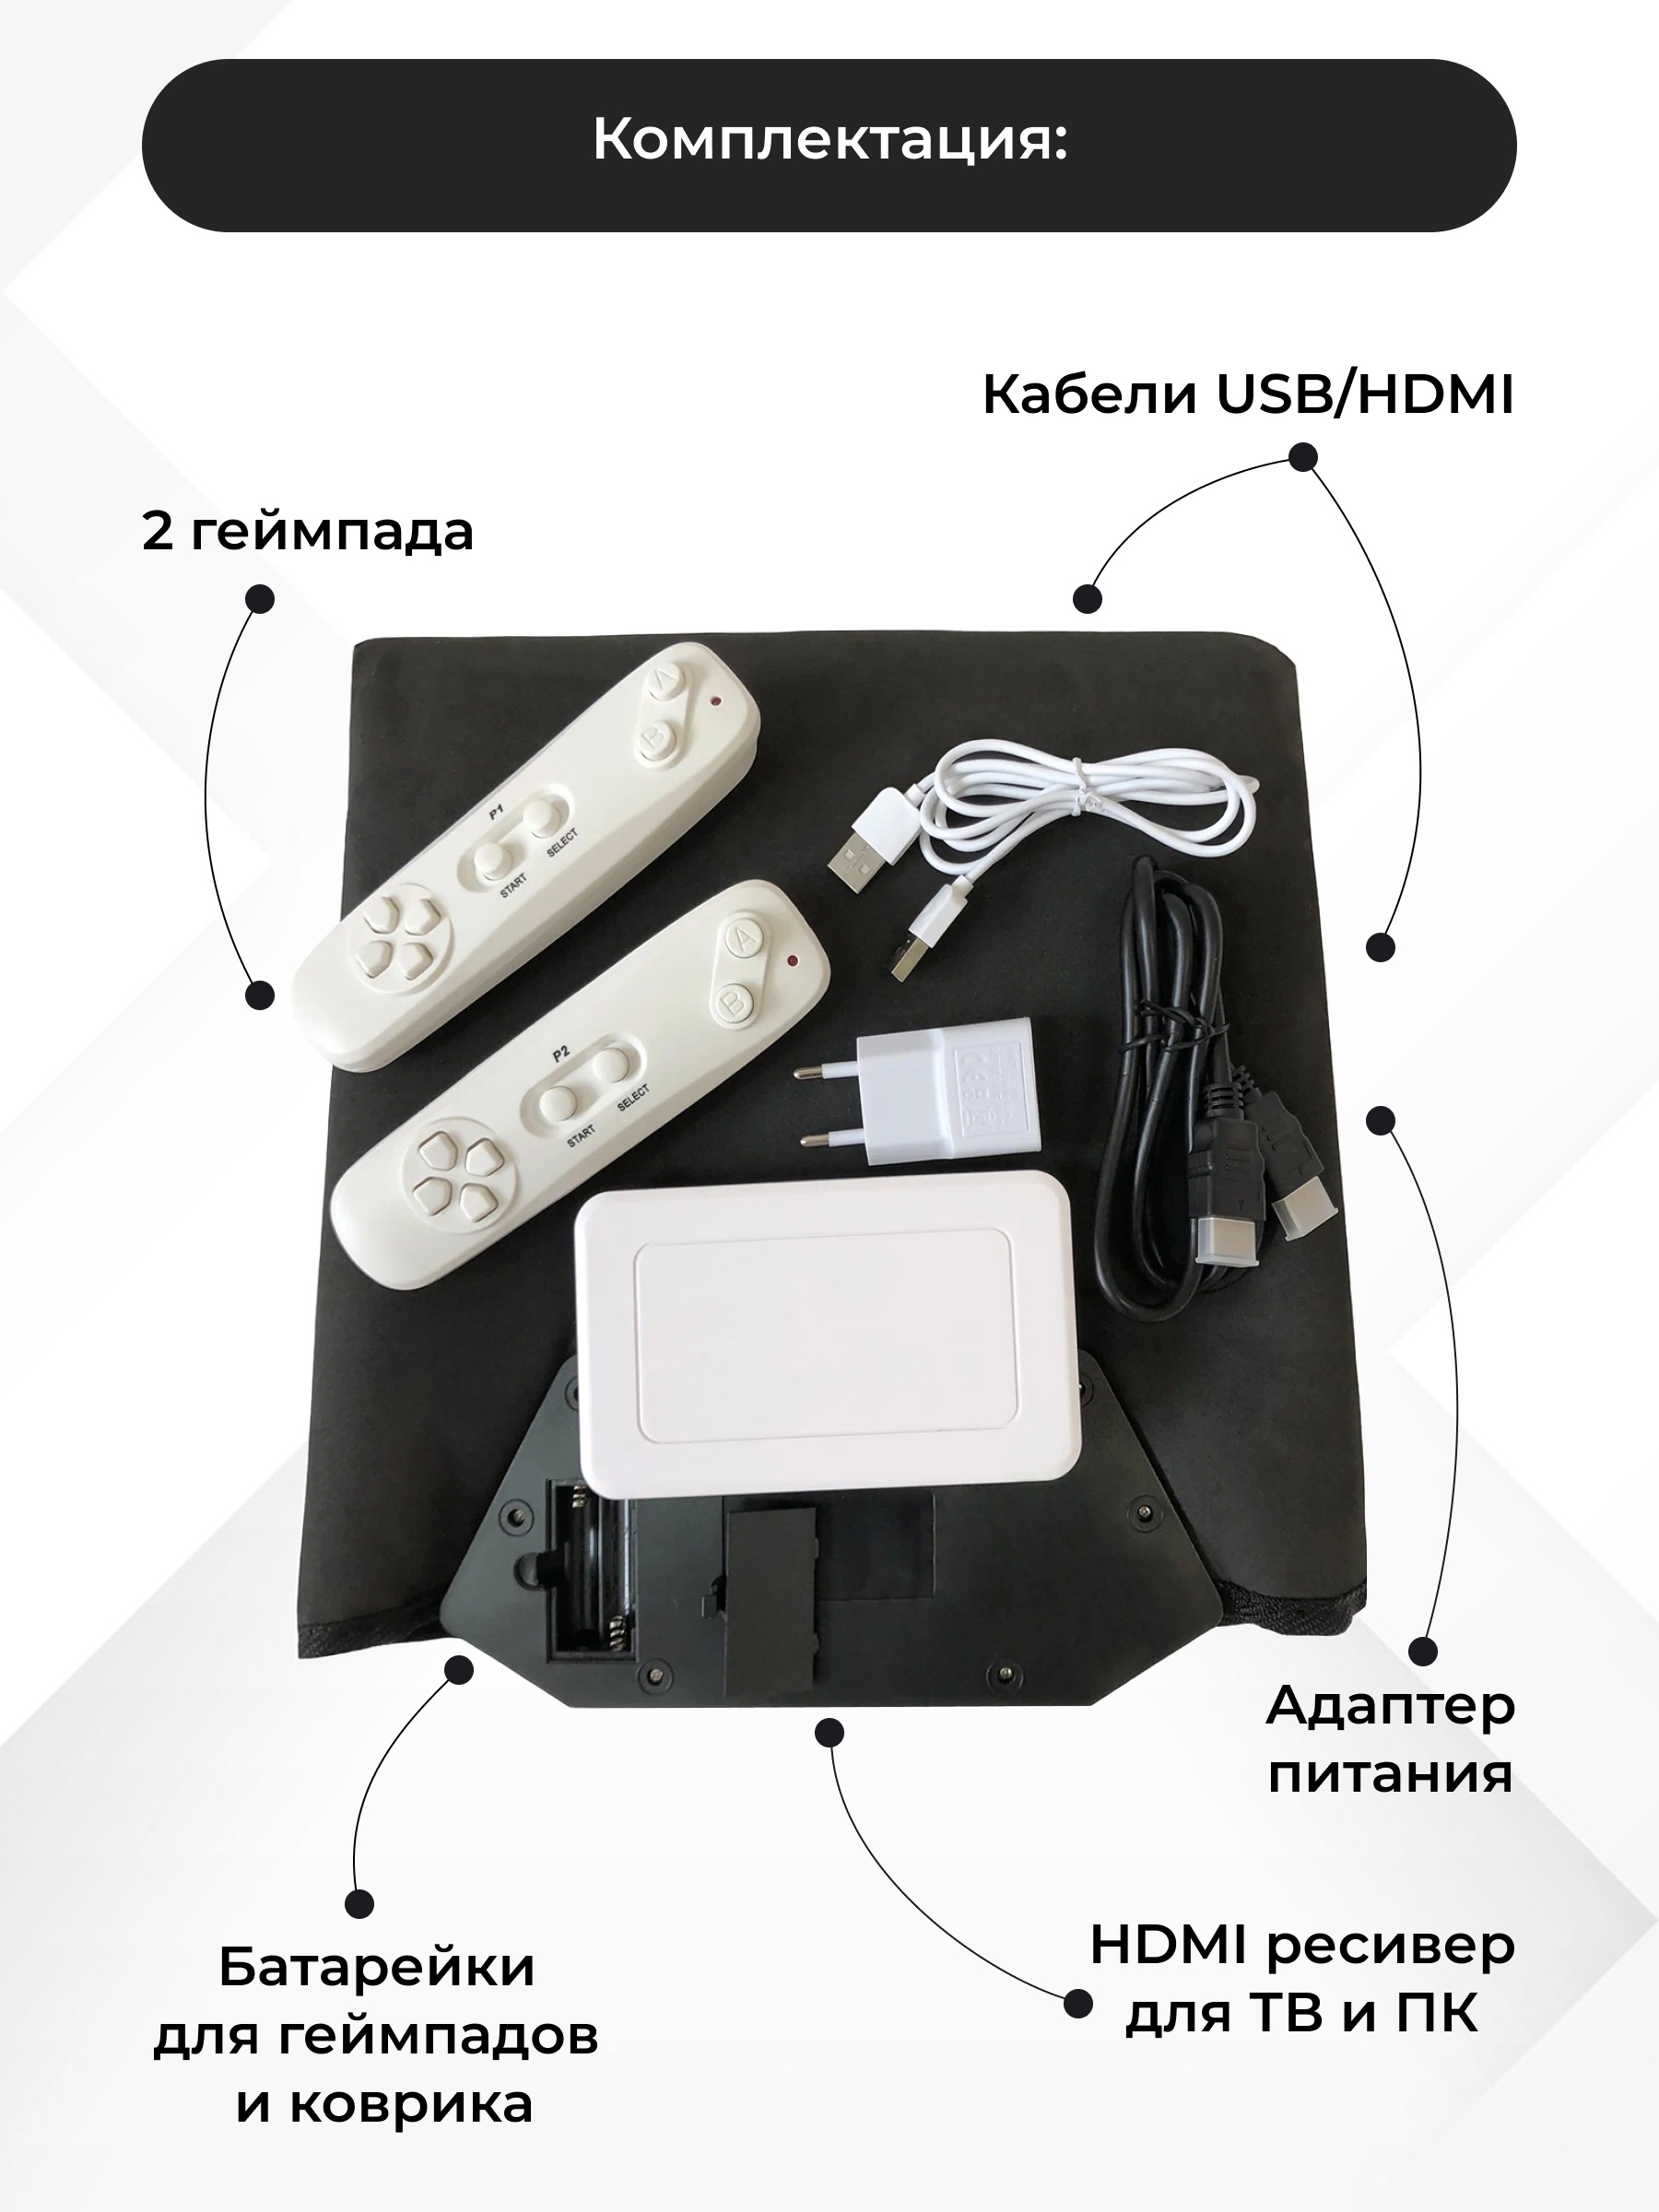 Танцевальный коврик для двоих c HDMI, беспроводной, 64 Бит, музыка, игры, аэробика, русское меню, (ТV, PC)